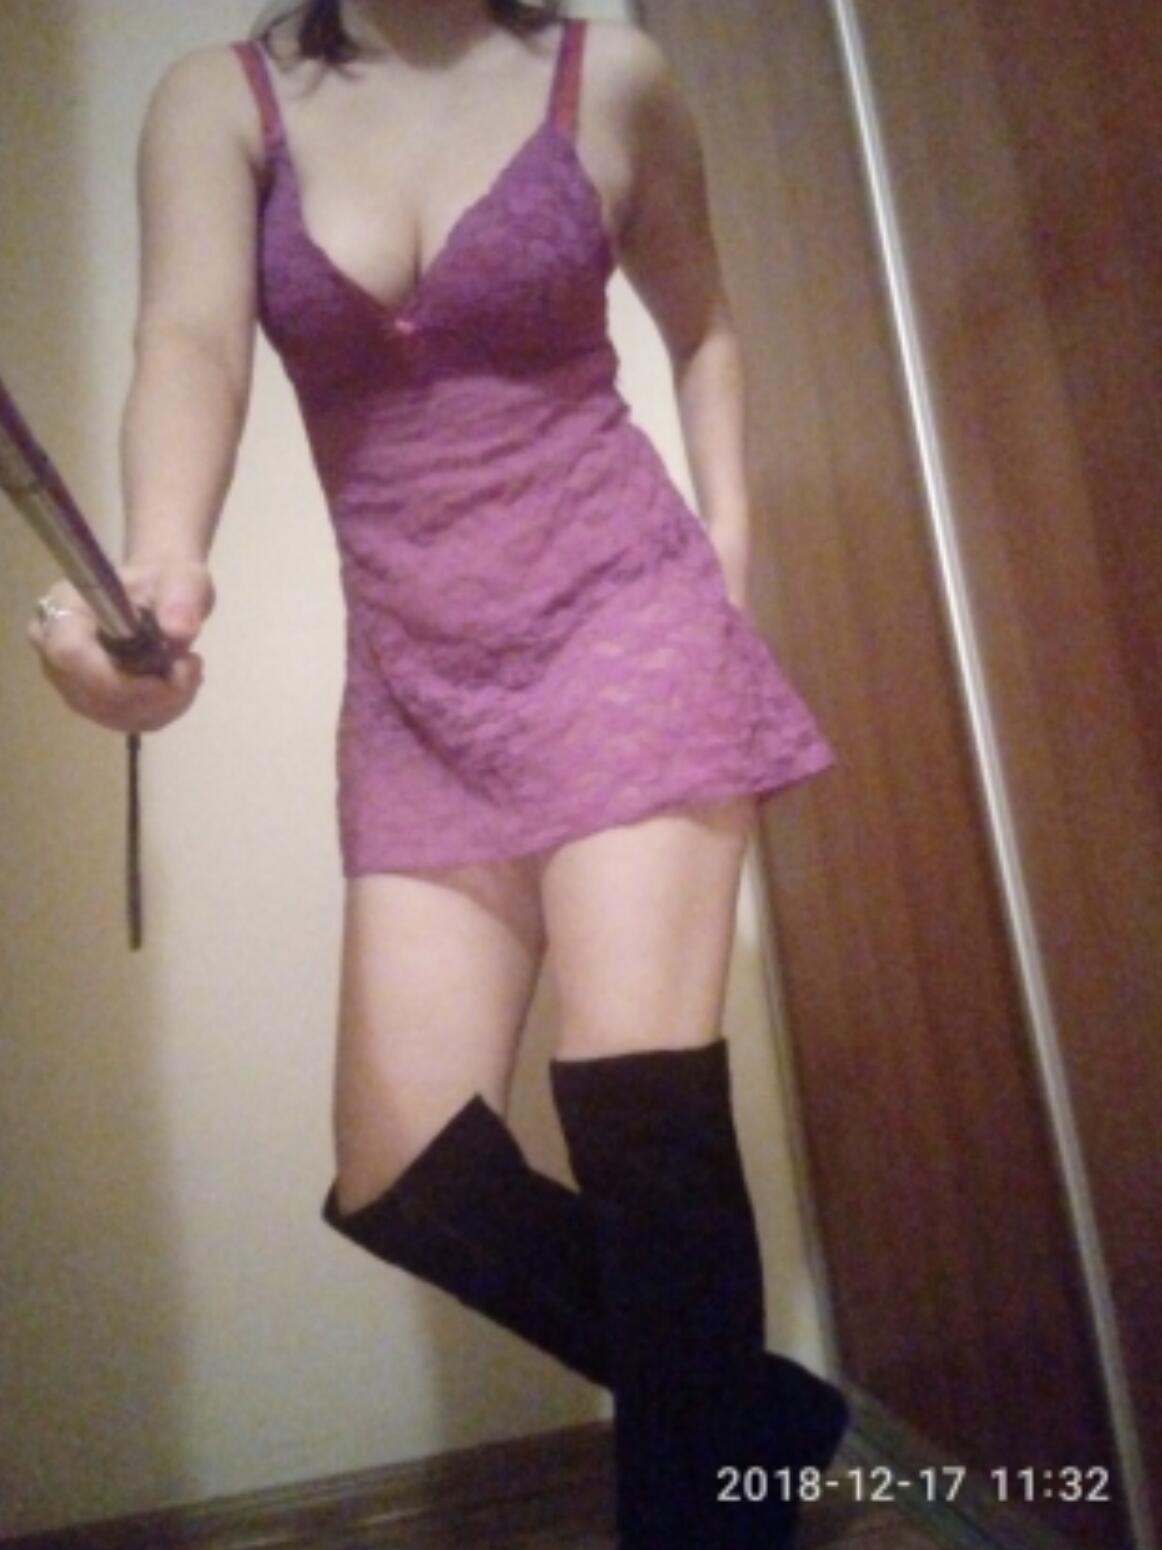 Проститутка Катя, фото 2, тел: 0981215782. В центре города - Киев